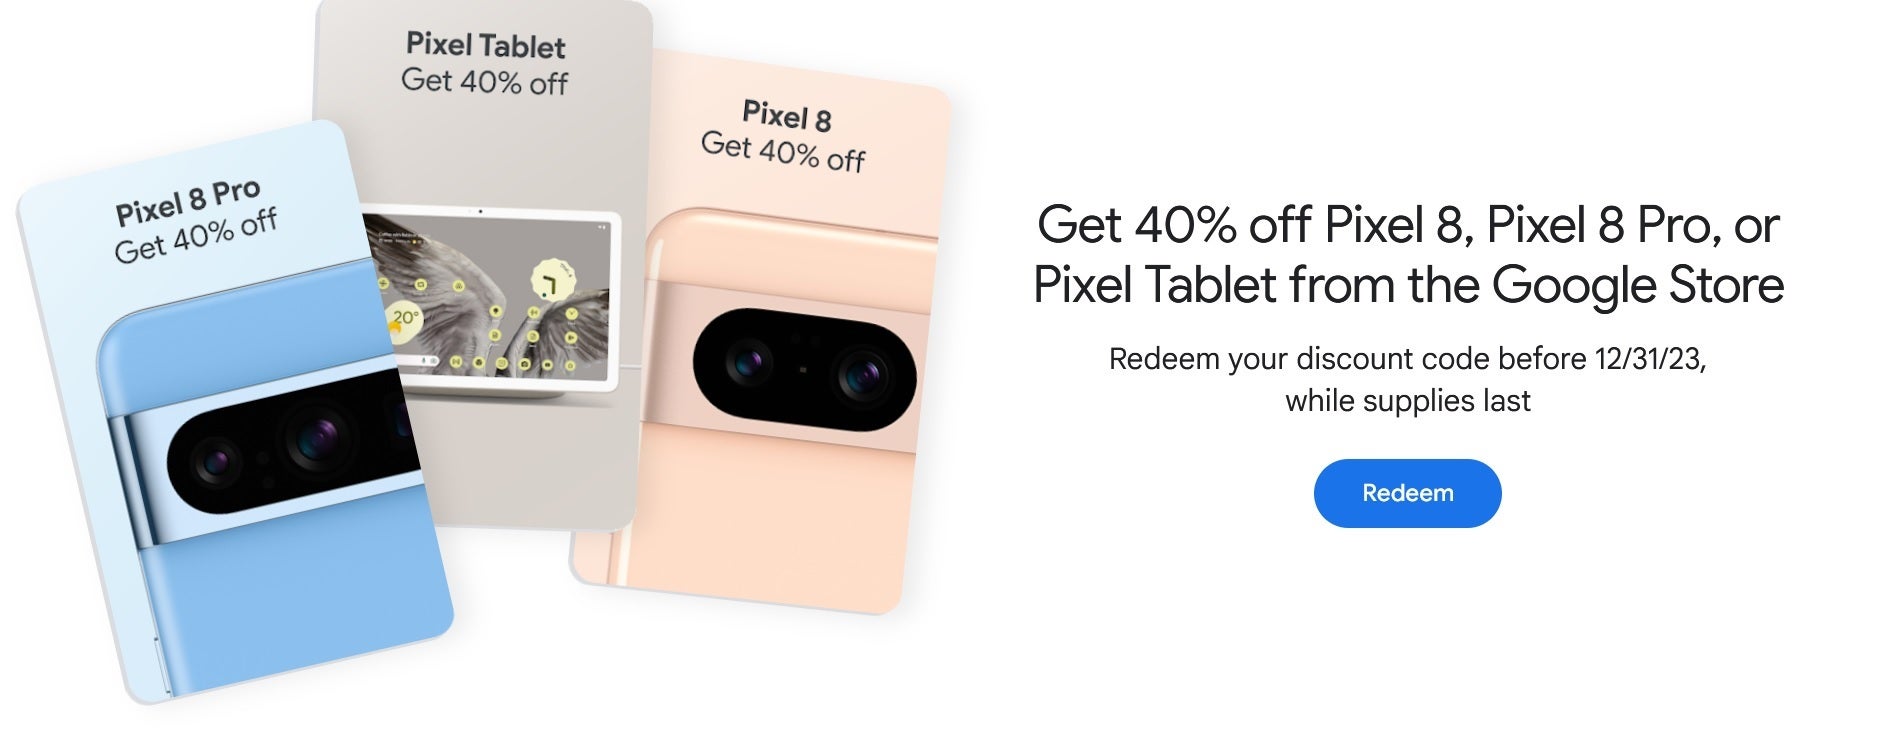 Você pode economizar 40% no Pixel 8, Pixel 8 Pro ou Pixel Tablet sendo um membro Gold, Platinum ou Diamond do Google Play Points - membros Google Play Points Gold e superiores podem obter 40% de desconto na série Pixel 8 e Pixel tábua